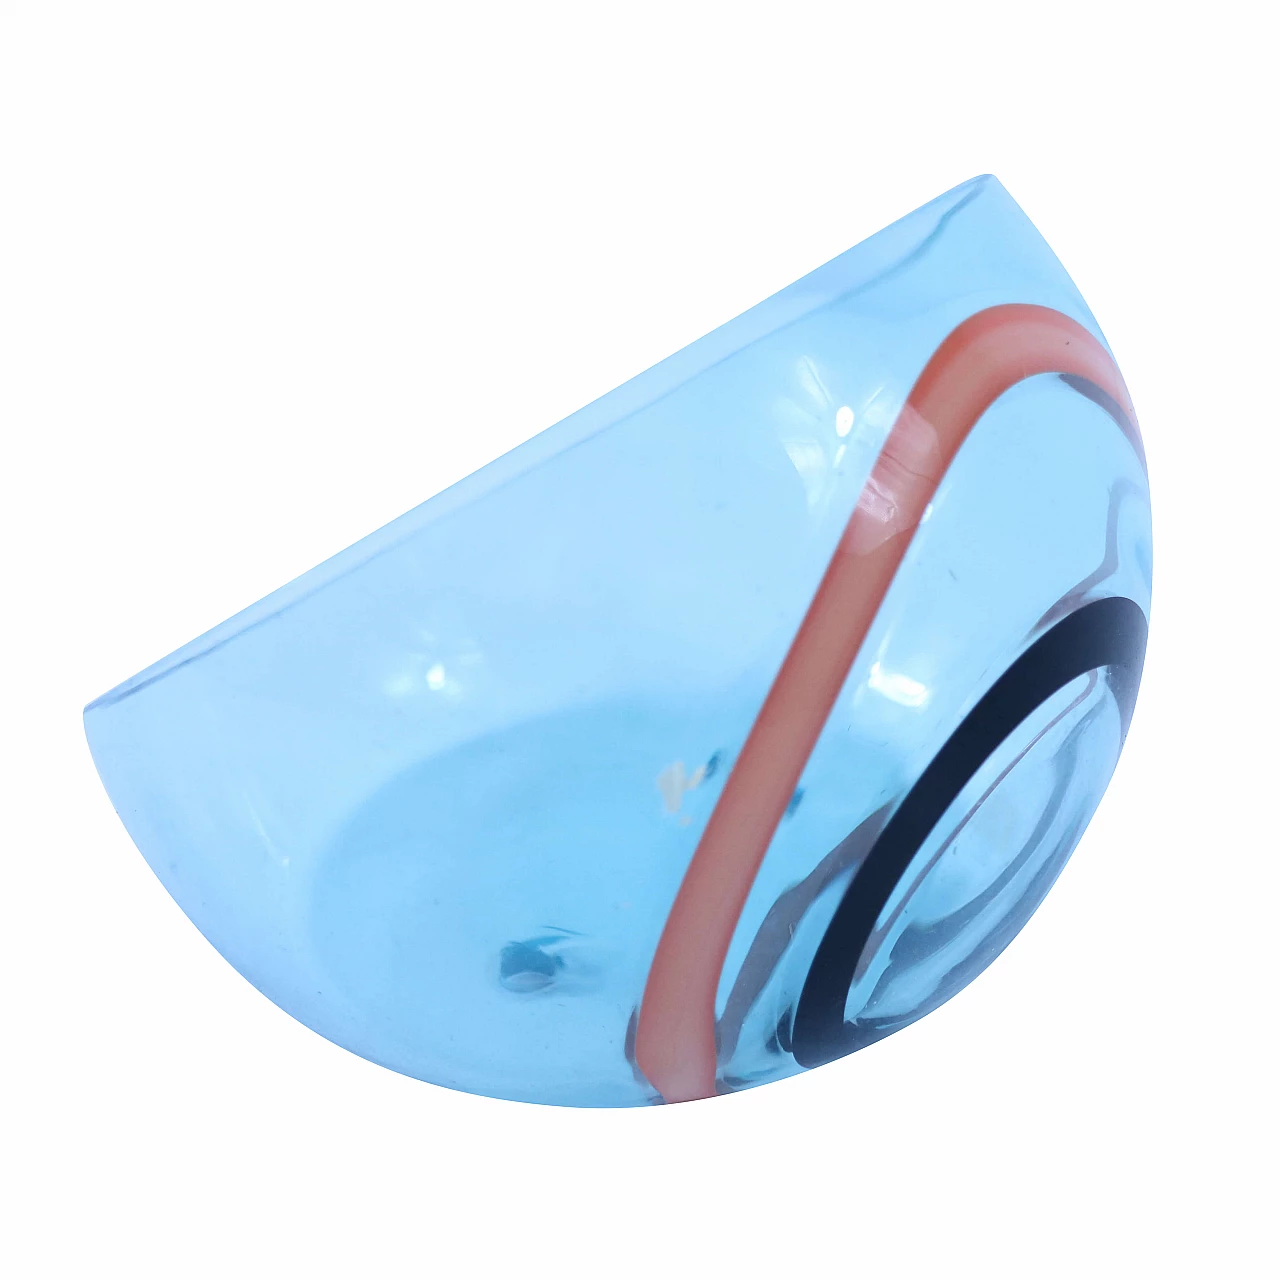 Murano glass soap dish 1127993